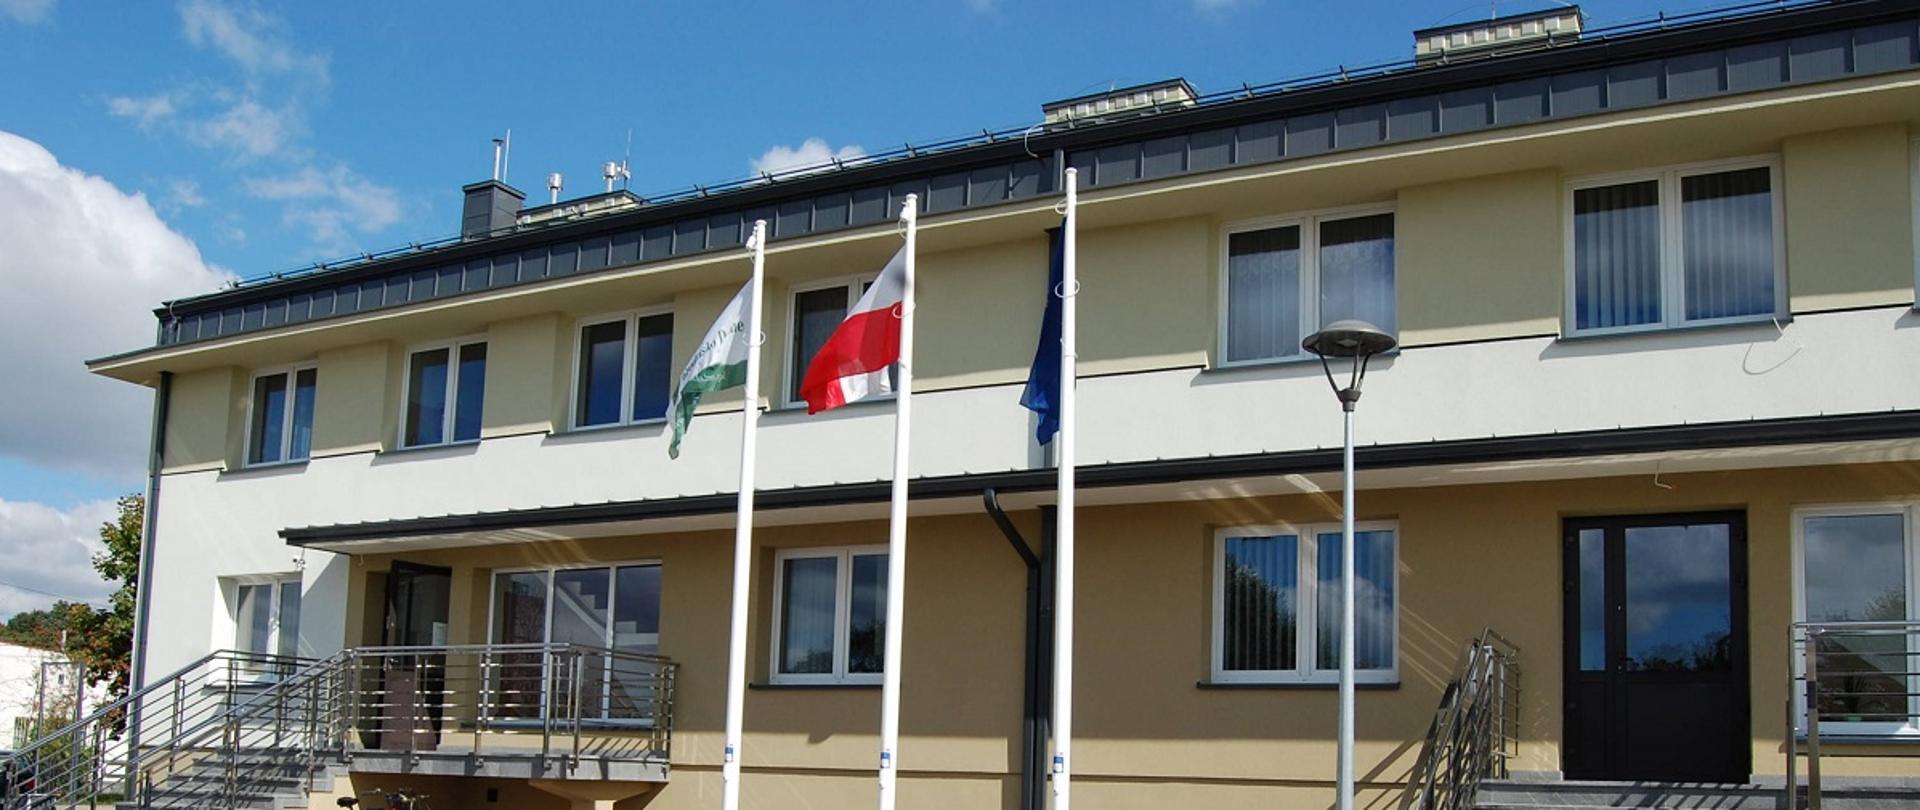 Biało - beżowy budynek z ciemnym dachem. Dwa wejścia po schodach do budynku. Przed budynkiem ławki, stojak na rowery oraz trzy maszty z zielona flagą Gminy Grodzisko Dolne, biało - czerwoną flagą Polski niebieska flagą Unii Europejskiej. 